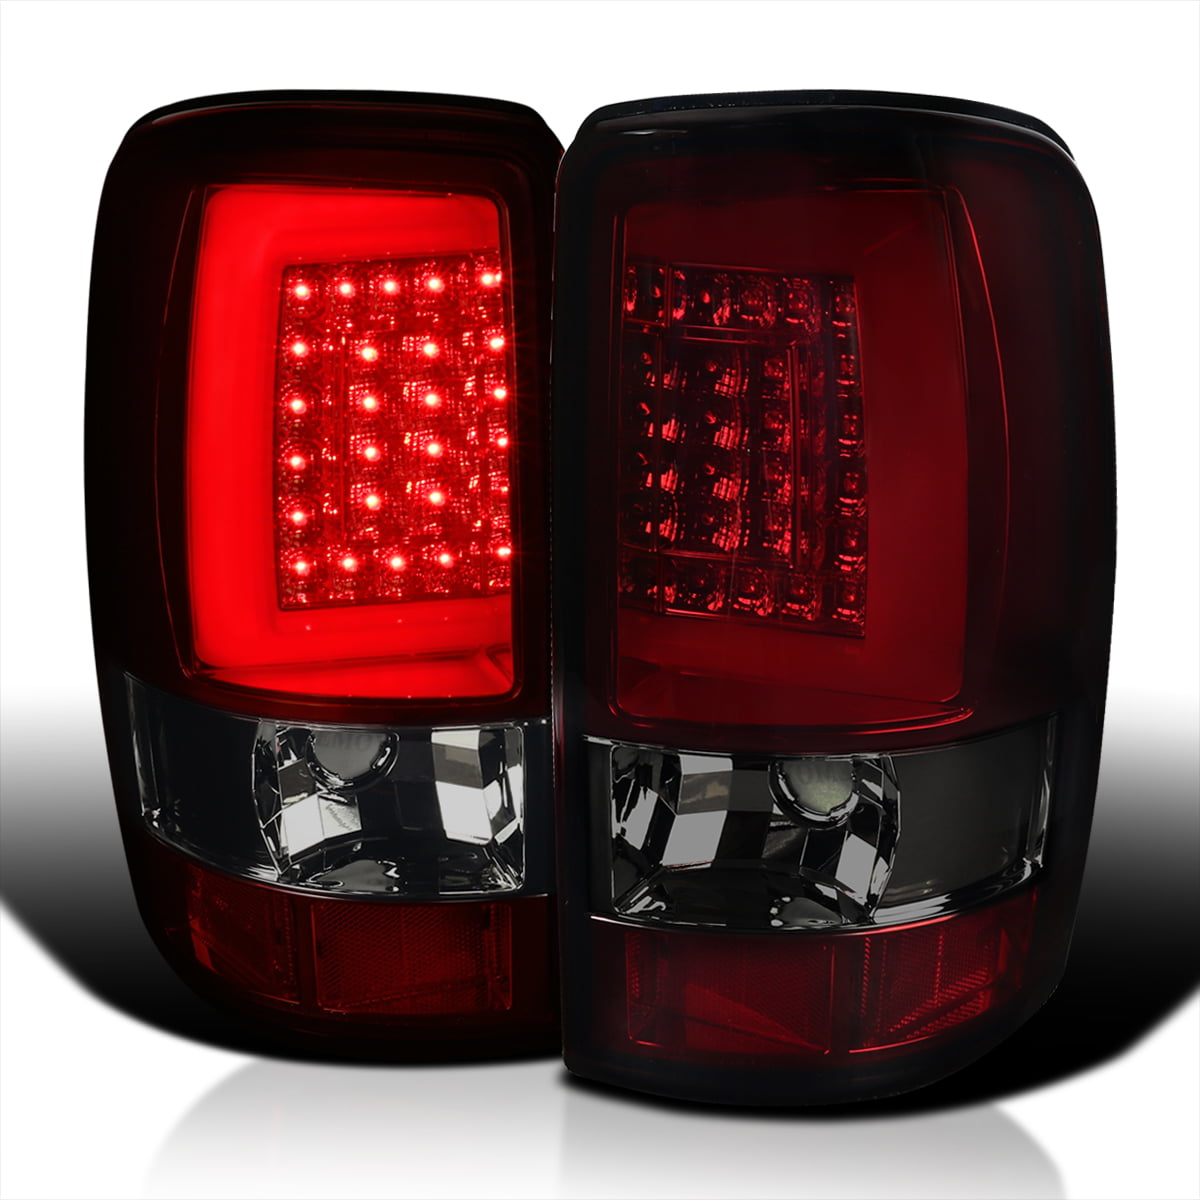 Red Chevy Tahoe GMC Yukon 1500 2500 3500 LED Tail Light Rear Brake Lamps Pair 